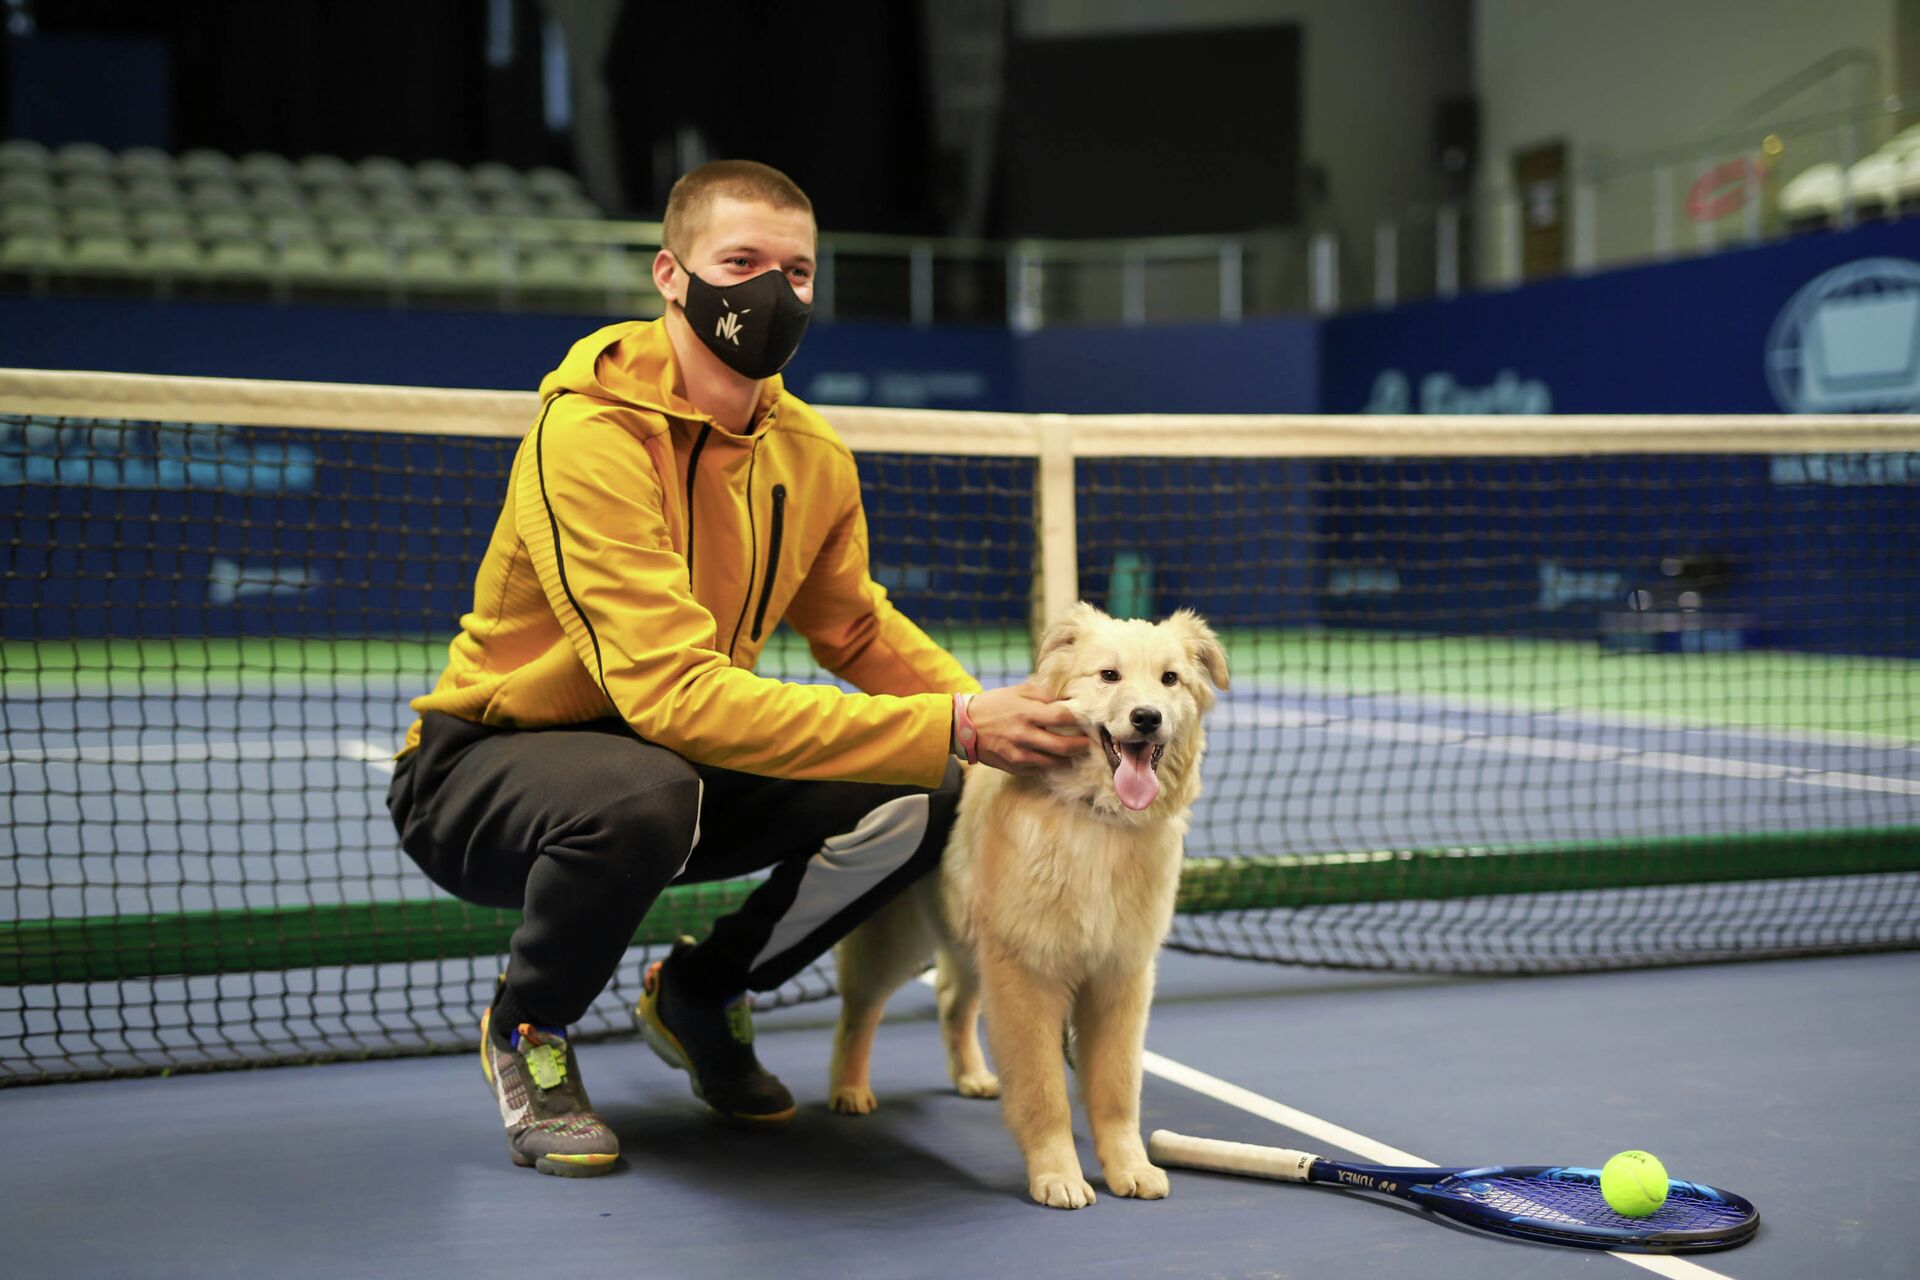 Казахстанские теннисисты снялись в фотосессии в поддержку бездомных животных - Sputnik Казахстан, 1920, 01.03.2021